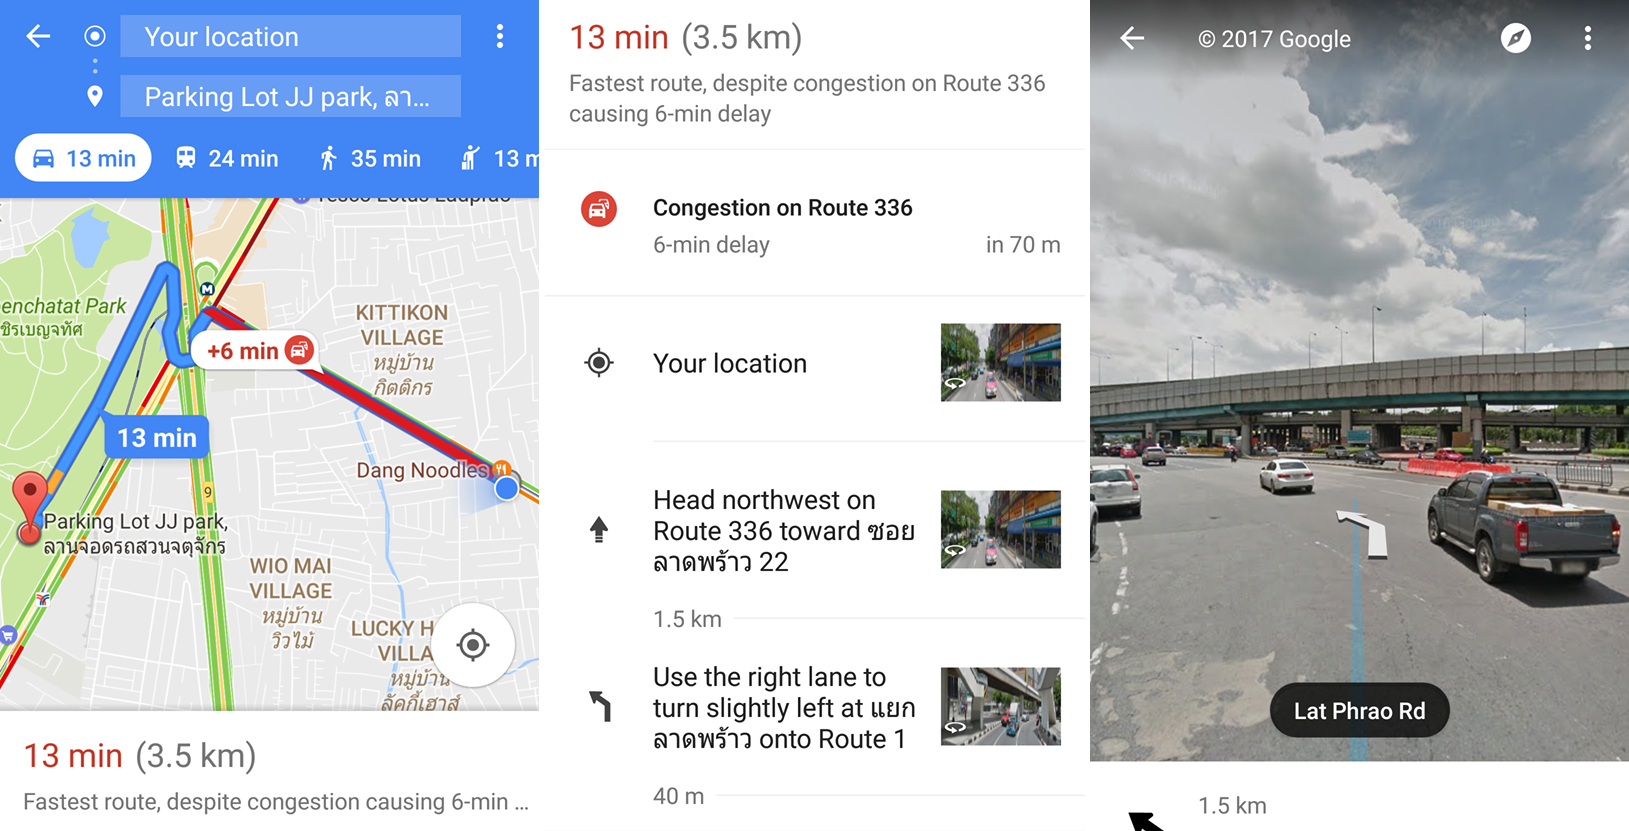 Google Maps เพิ่มฟีเจอร์โชว์รายละเอียดถนนเมื่อถึงทางแยก ป้องกันการเลี้ยวผิด เข้าเลนไม่ถูก